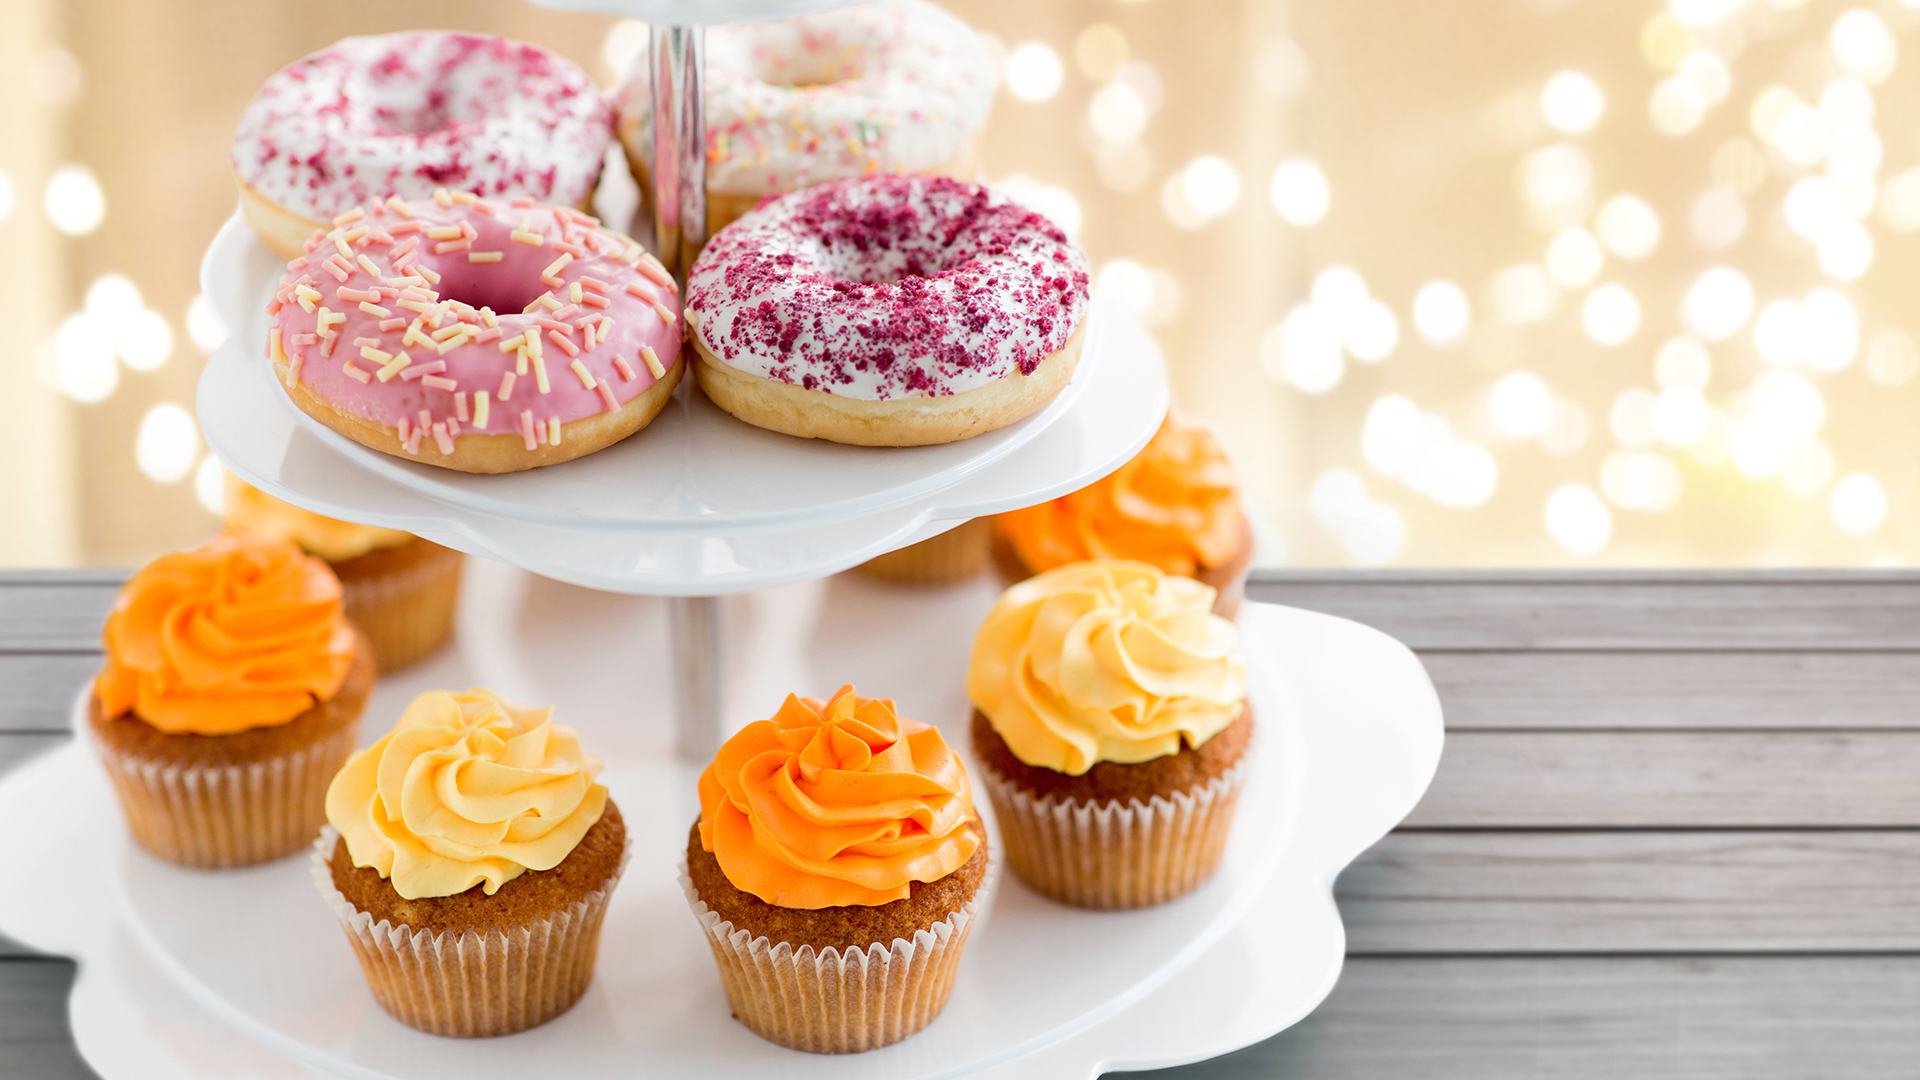 Donuts und Cupcakes auf einer Etagere | picture alliance / Zoonar